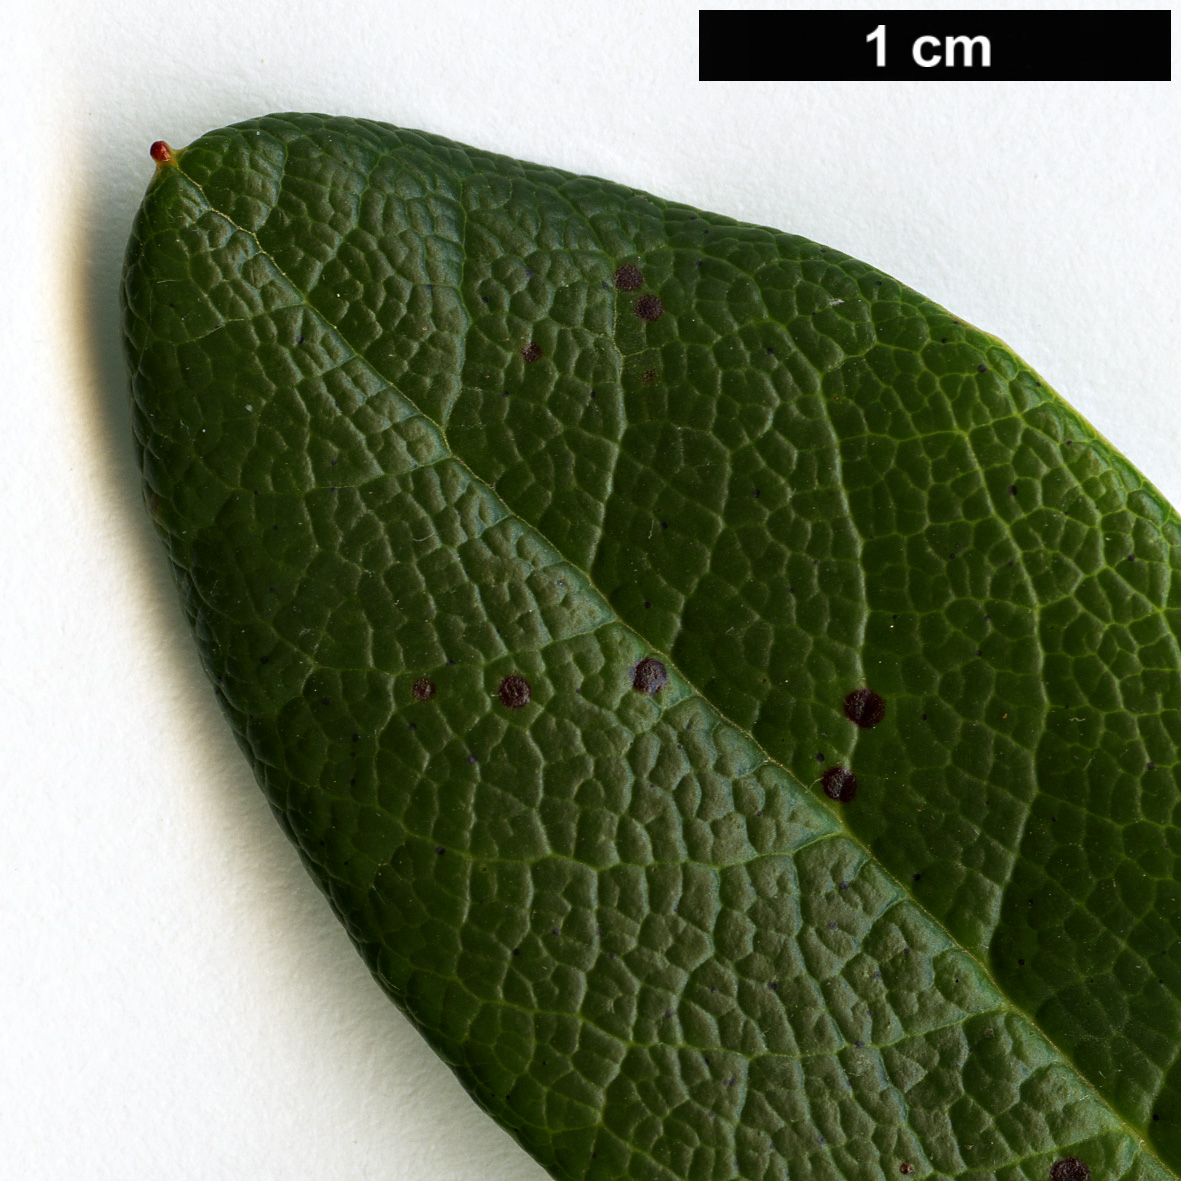 High resolution image: Family: Ericaceae - Genus: Rhododendron - Taxon: chamaethomsonii - SpeciesSub: var. chamaethauma